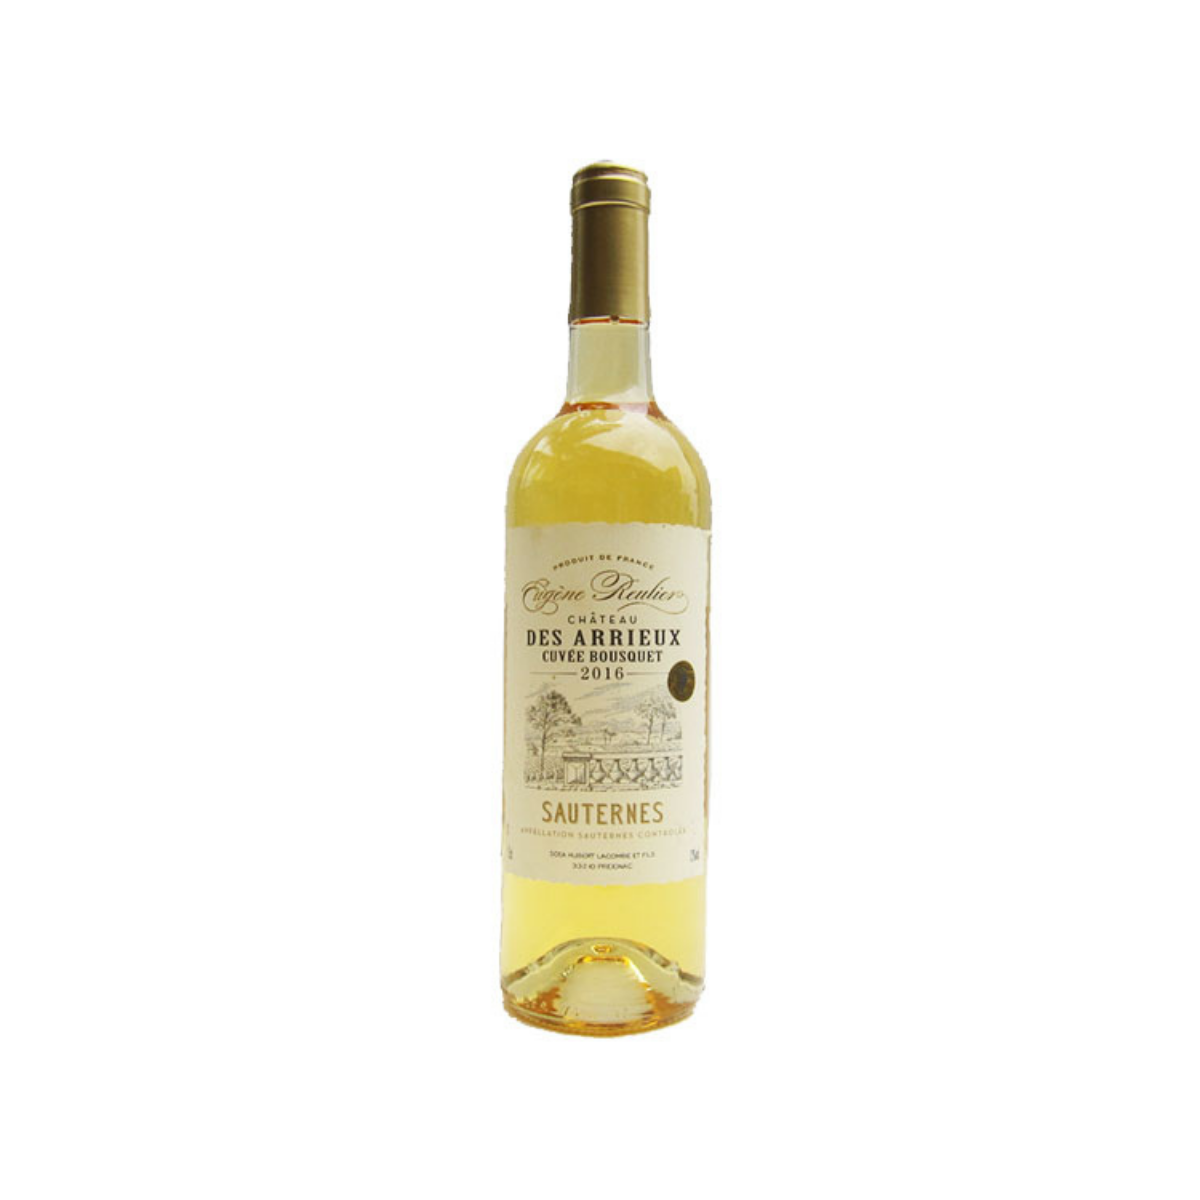 Vin blanc - E. Reulier Sauternes Château Blanc Moelleux 75 cl